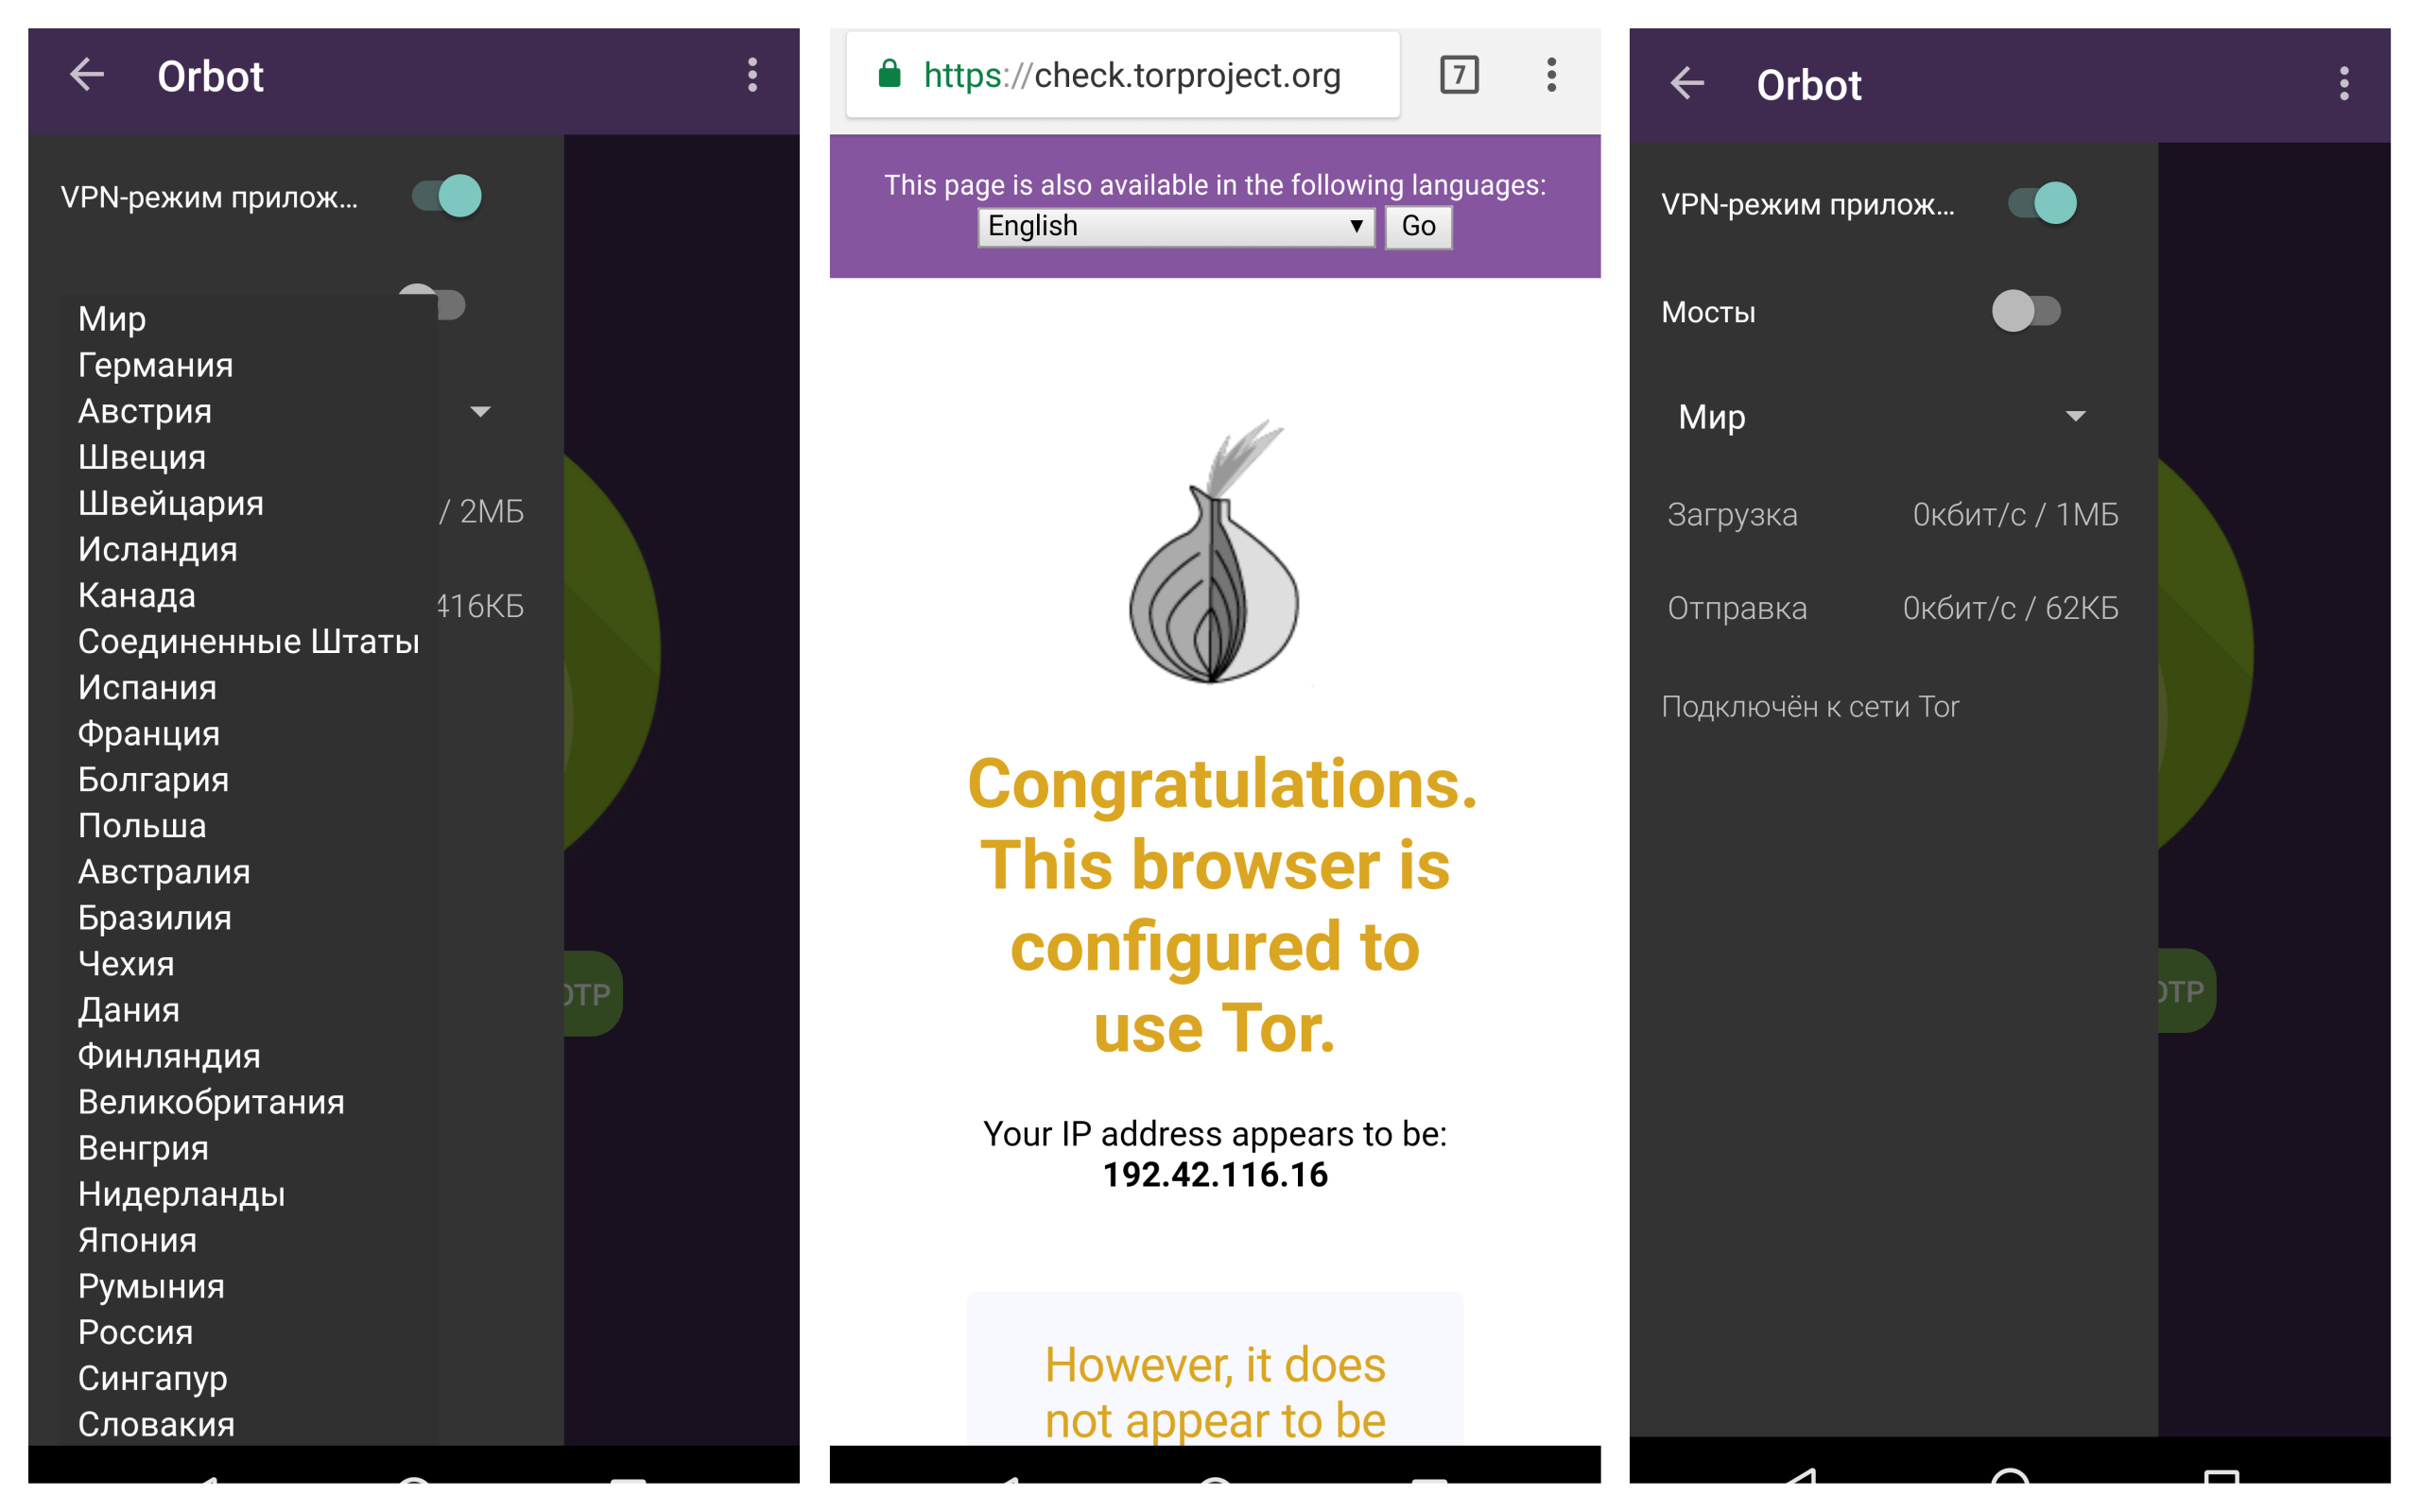 Скачать тор браузер бесплатно с официального сайта на русском для андроид gidra заказать конопляное семя